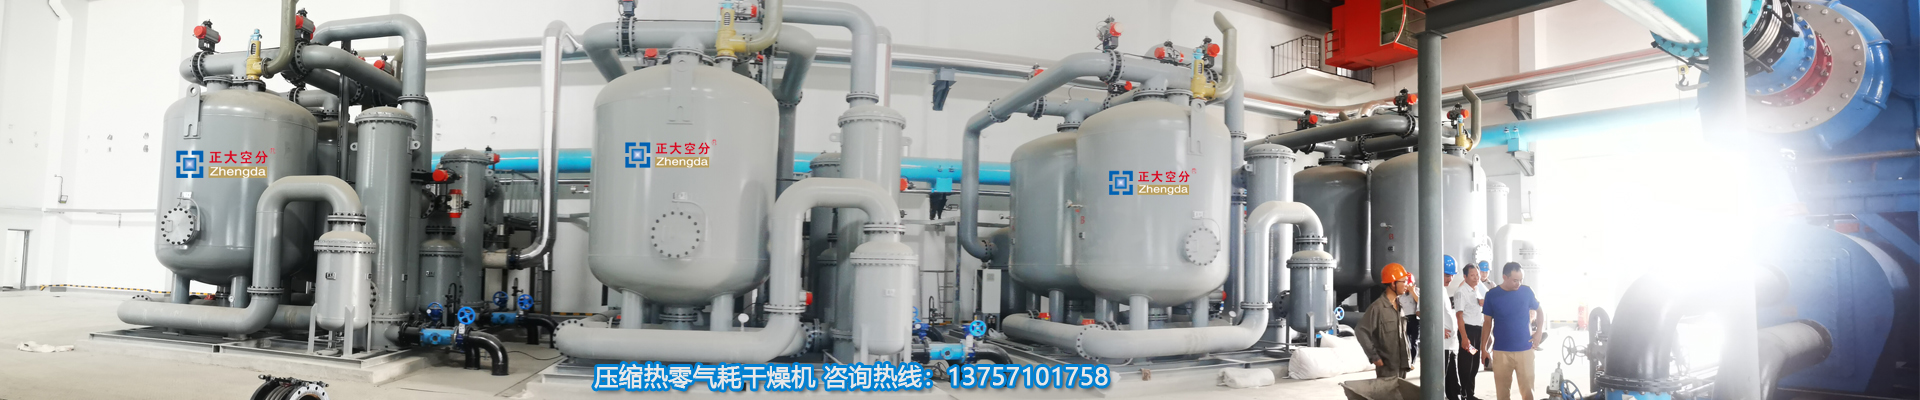 氮气纯化装置-零气耗干燥机、余热再生干燥机、余热式干燥器生产厂家、浙江正大空分设备有限公司